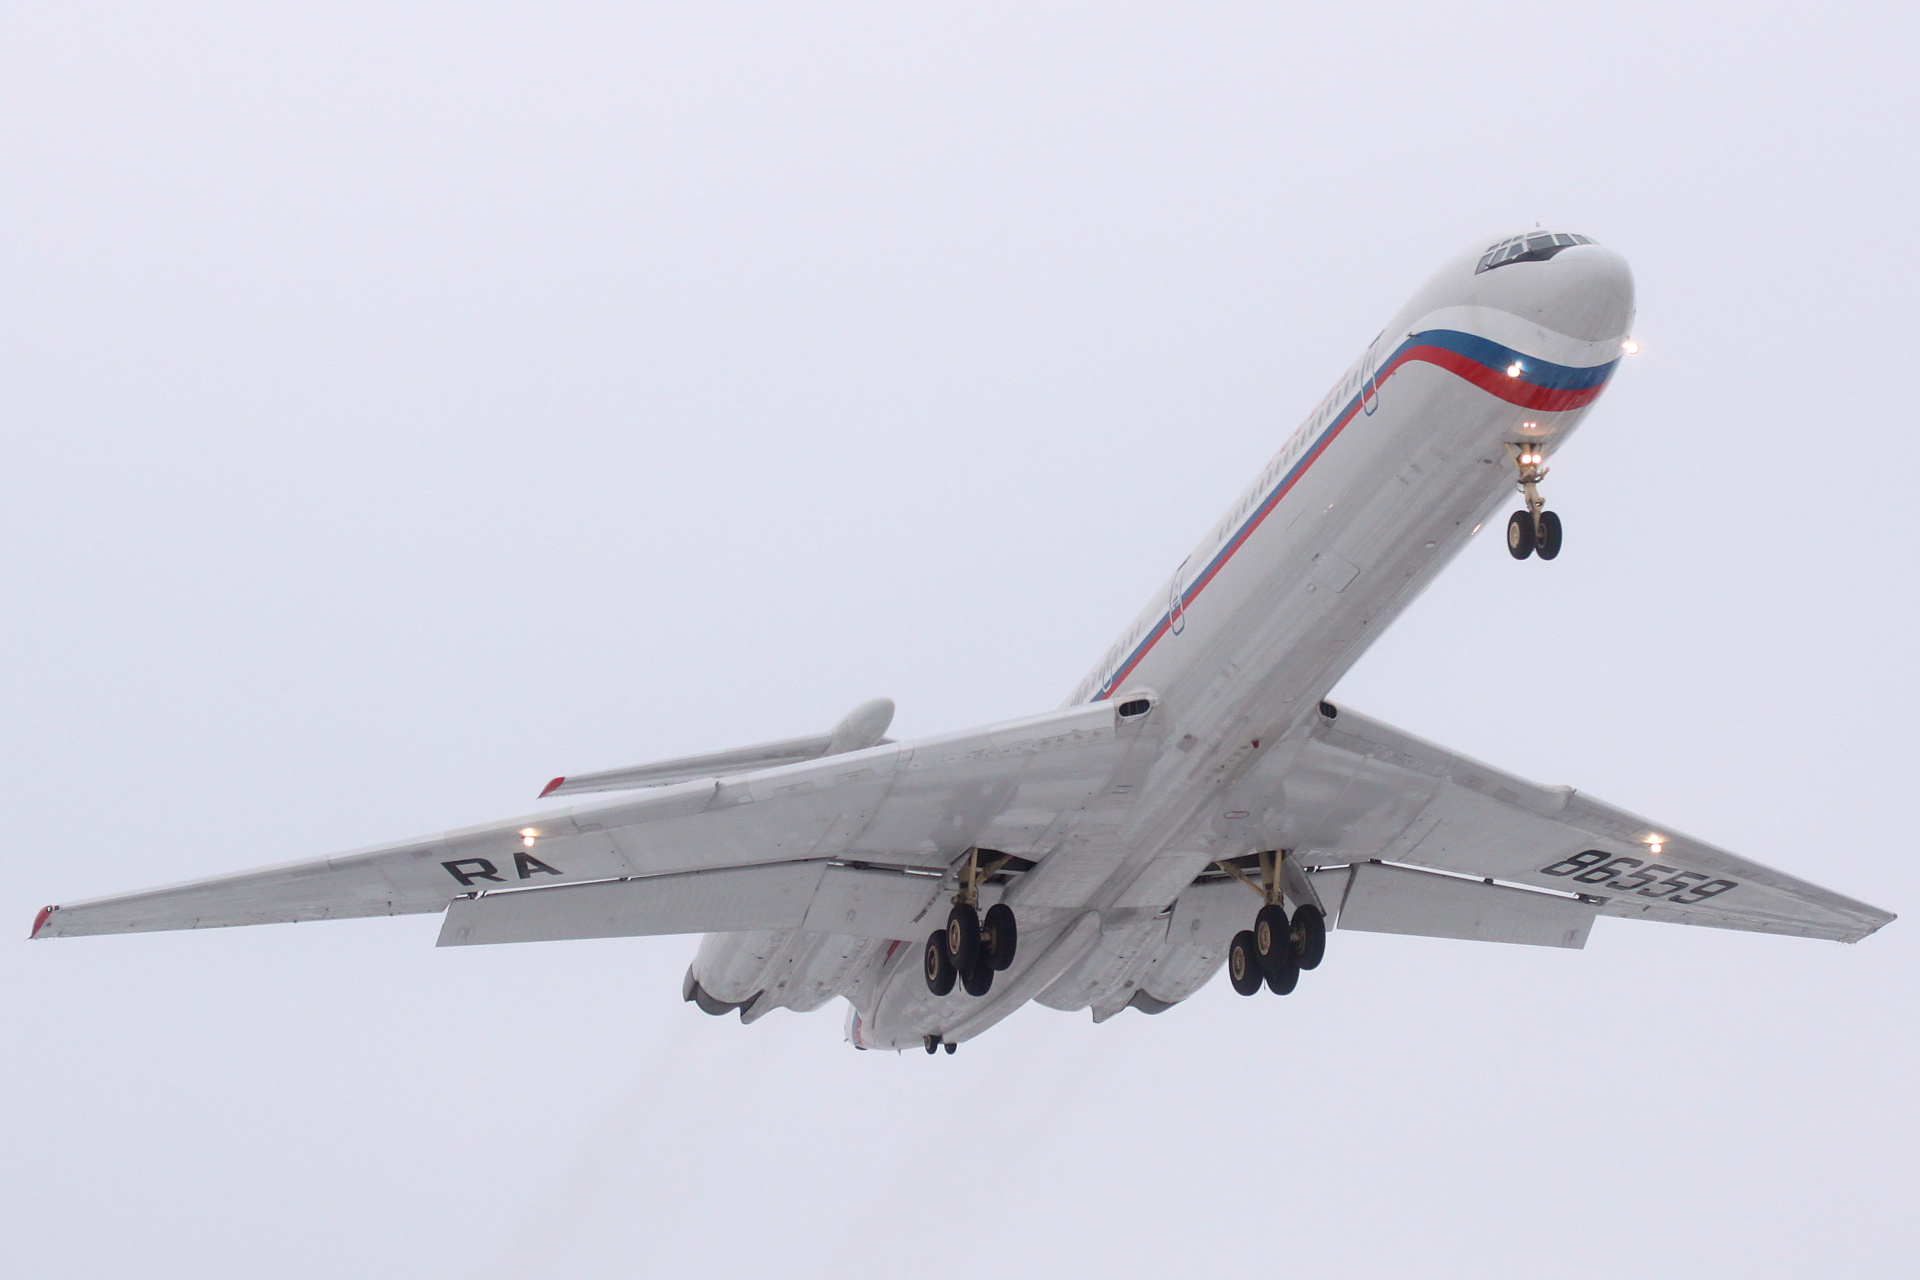 RA-86559, Russia State Transport Company (Aircraft » EPWA Spotting » Ilyushin Il-62M)